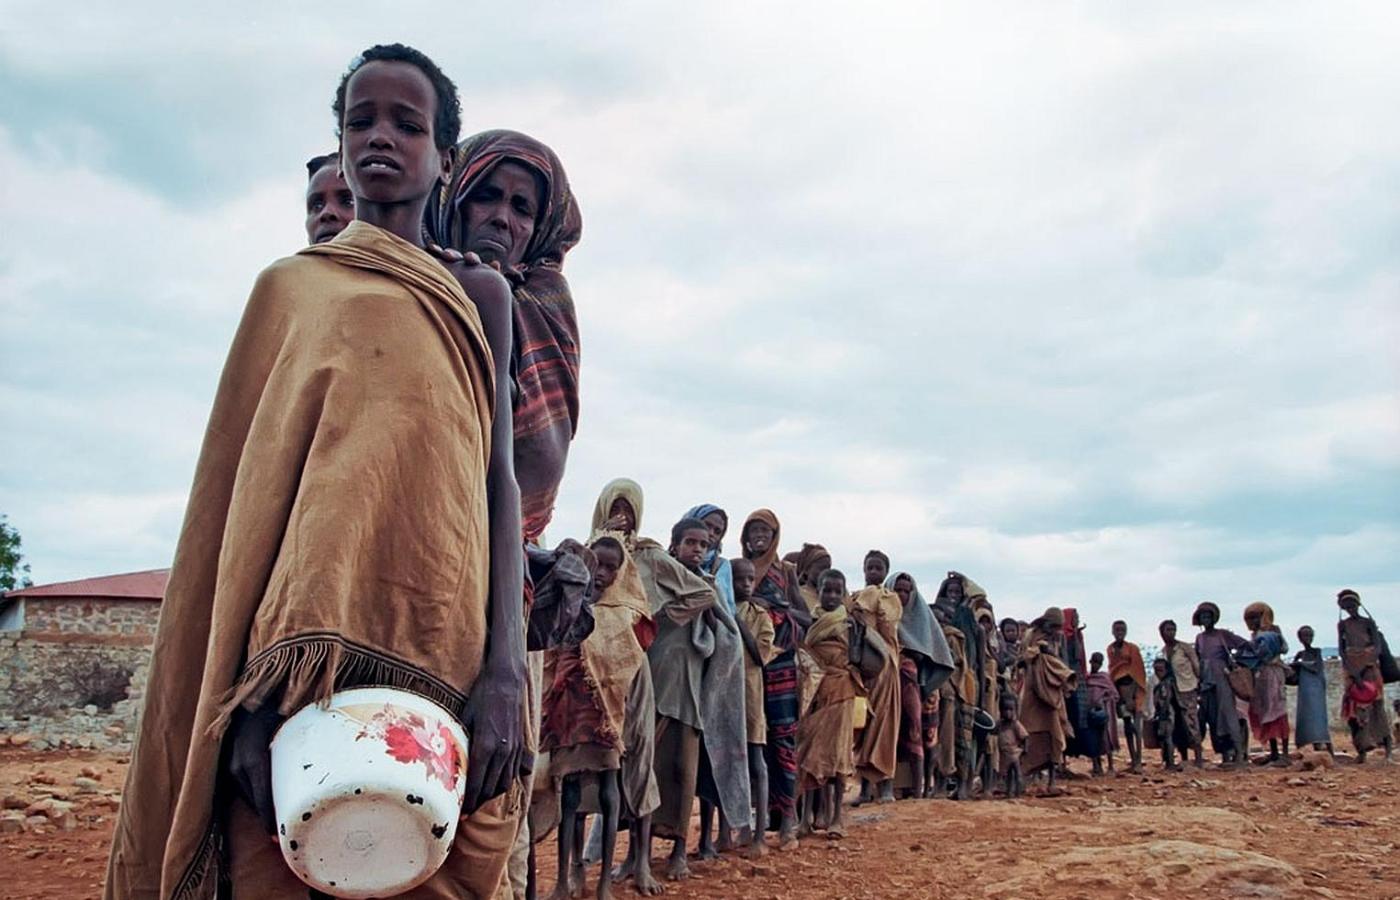 Ofiary głodu w kolejce po żywność w Baidoa w Somalii.